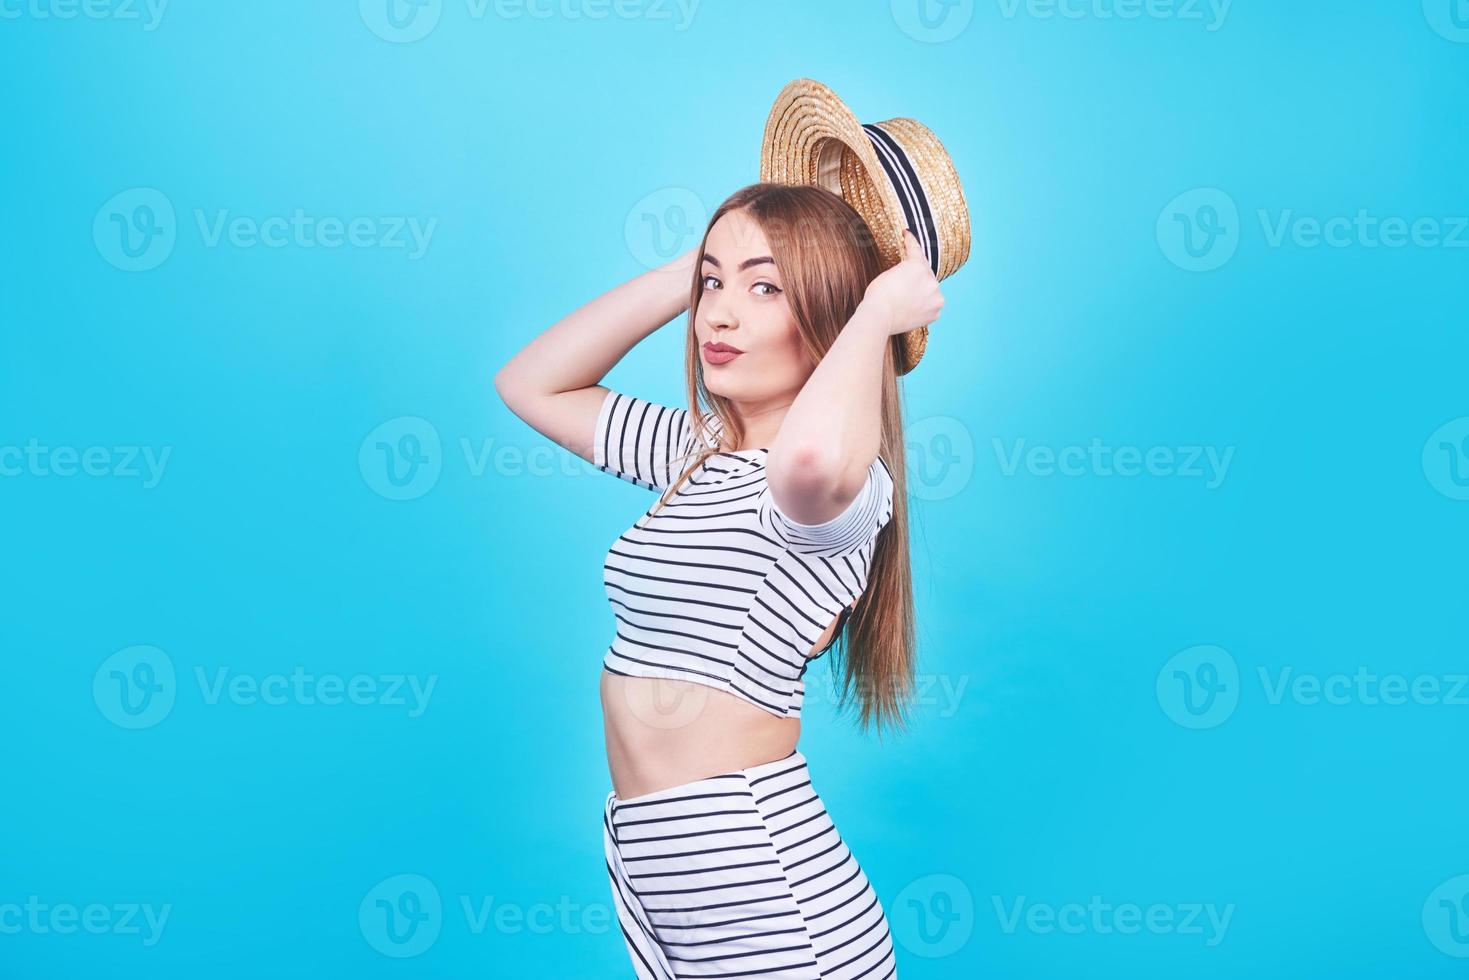 garota atraente em listras brancas e pretas, chapéu, óculos escuros, boca emocionalmente aberta sobre um fundo azul brilhante com um corpo perfeito. isolado. tiro de estúdio foto